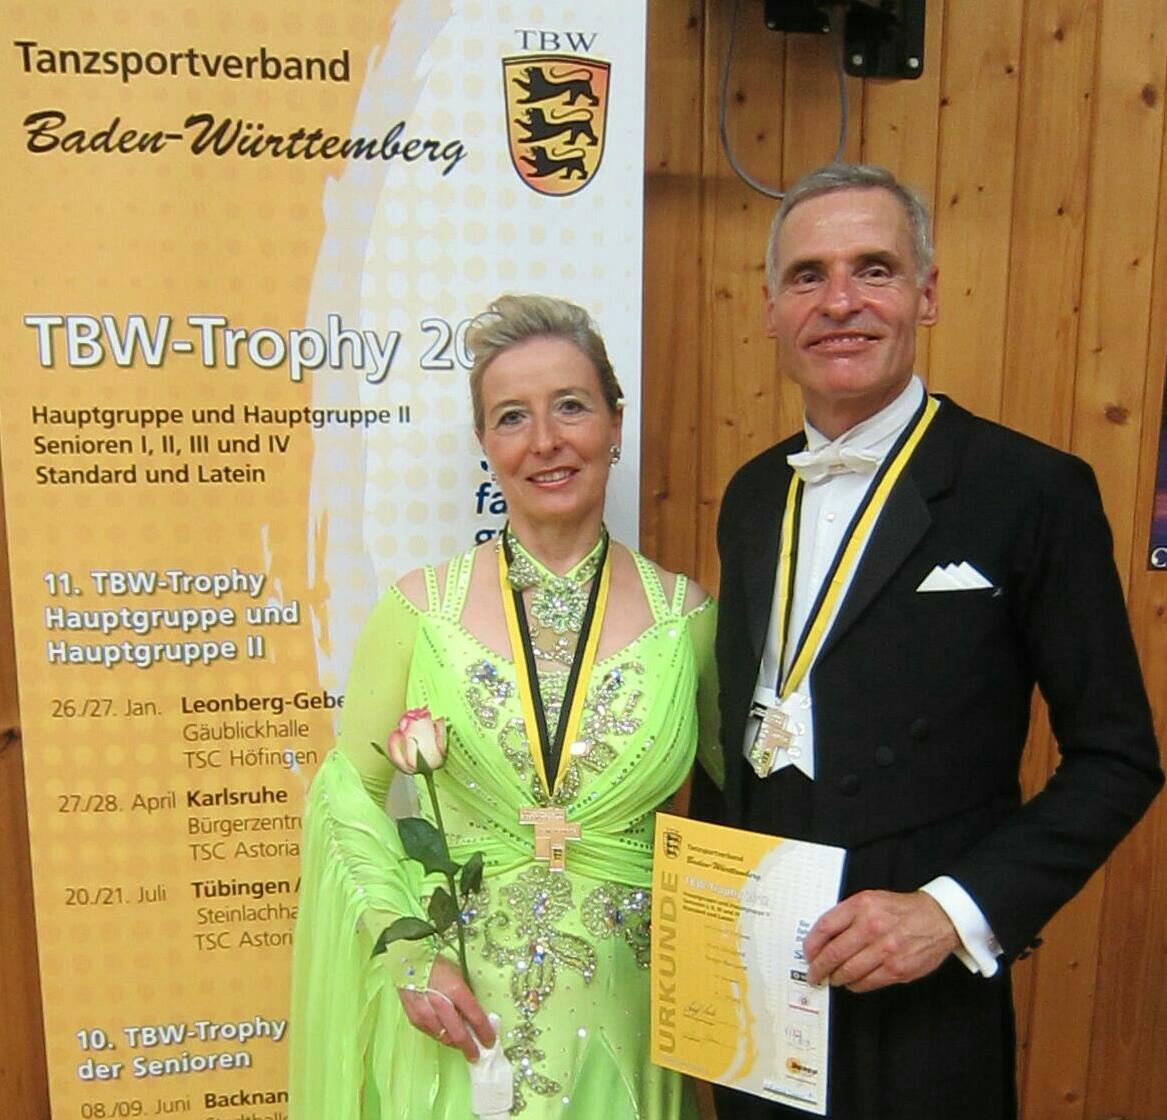 Mangard_TBW_Trophy2012